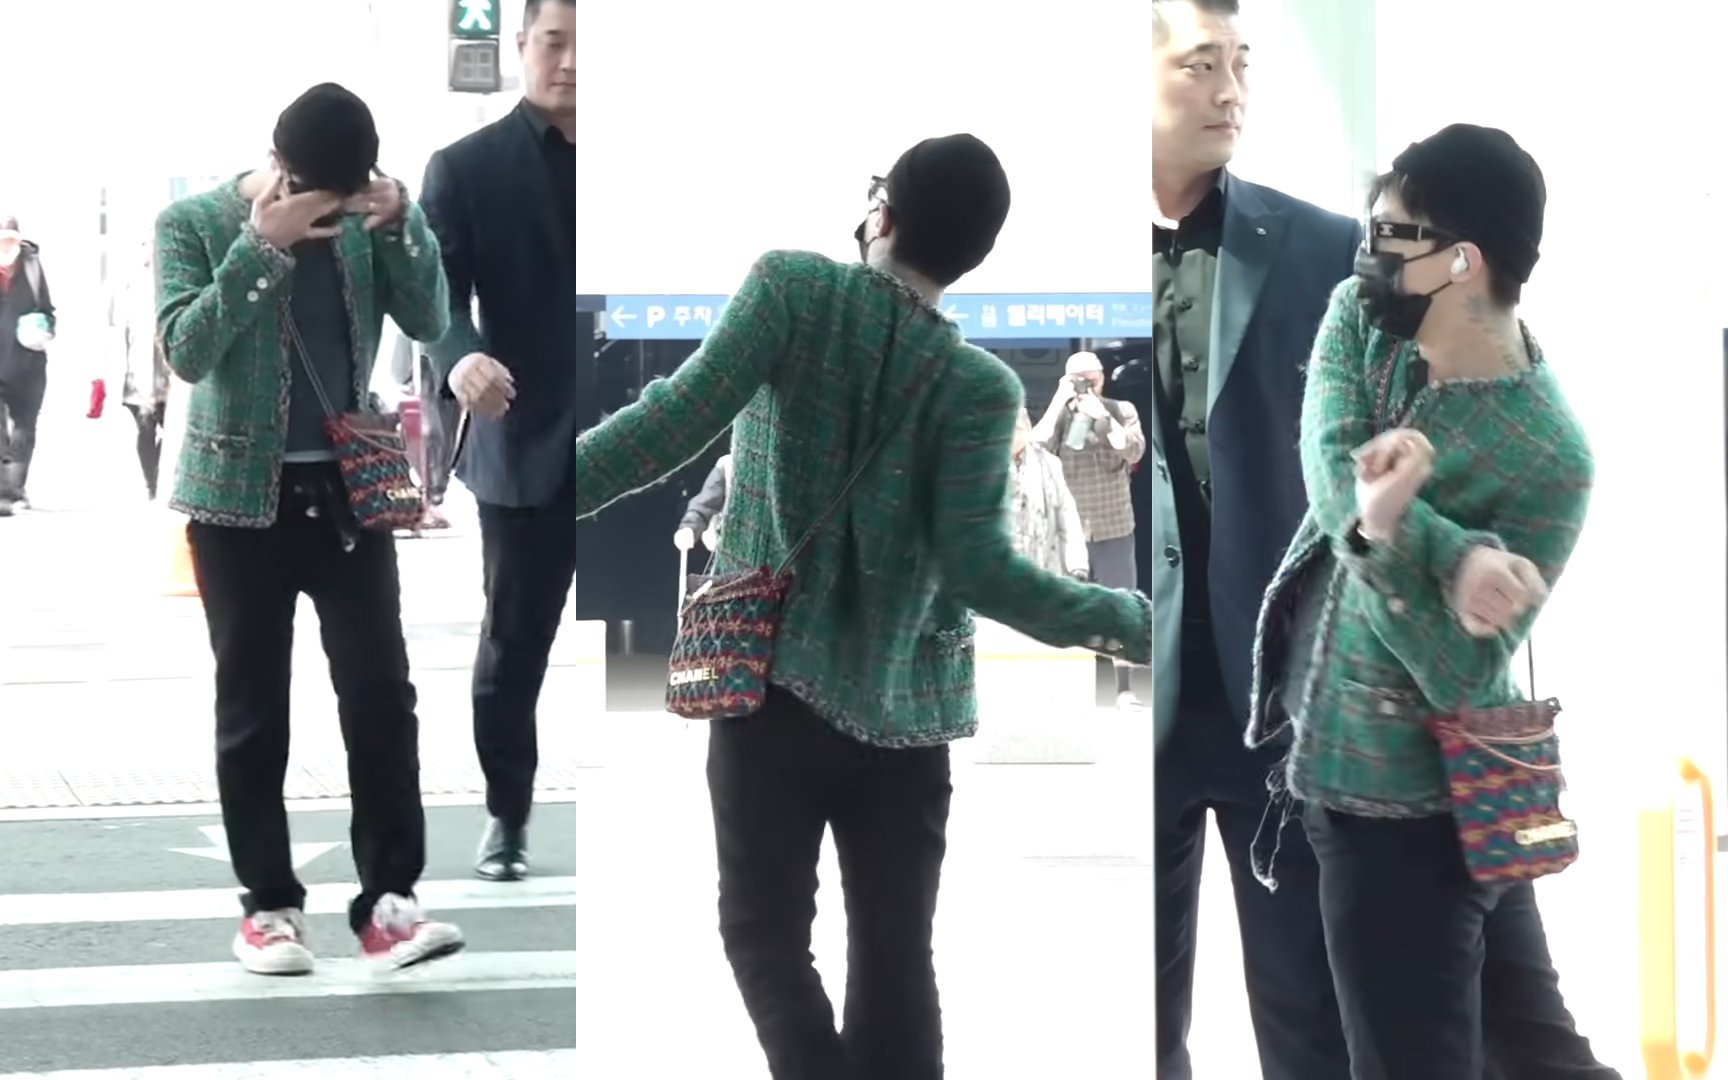 El comportamiento errático previo de G-Dragon y sus movimientos extraños en el aeropuerto bajo escrutinio luego de sus acusaciones de drogas